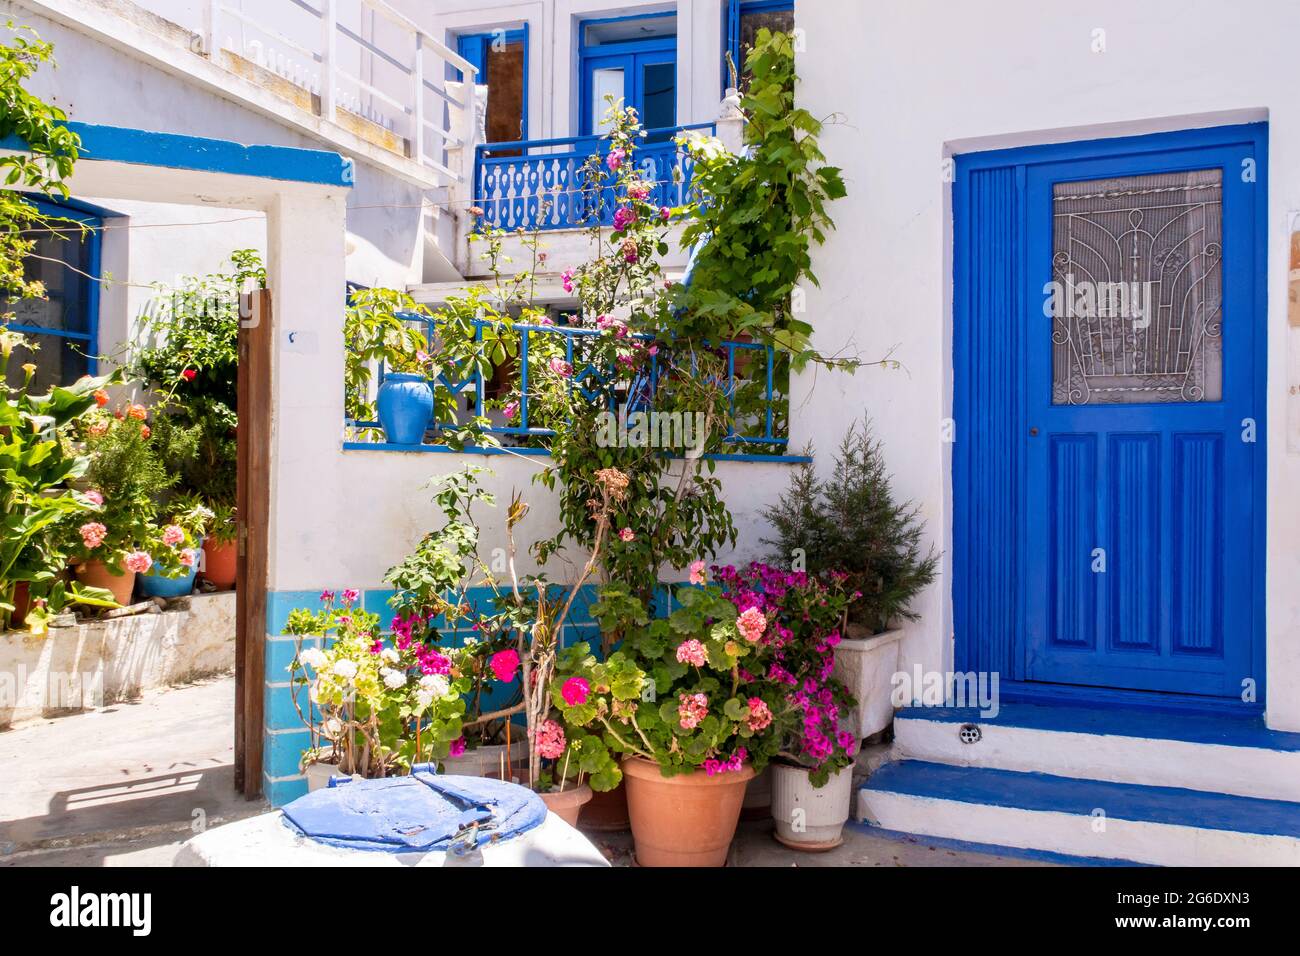 Plaka Town auf der Insel Milos - malerische schmale Steinstraße mit traditionellen griechischen weiß getünchten Wänden, blauen Türen, Fensterläden und blühenden Blumen. Stockfoto